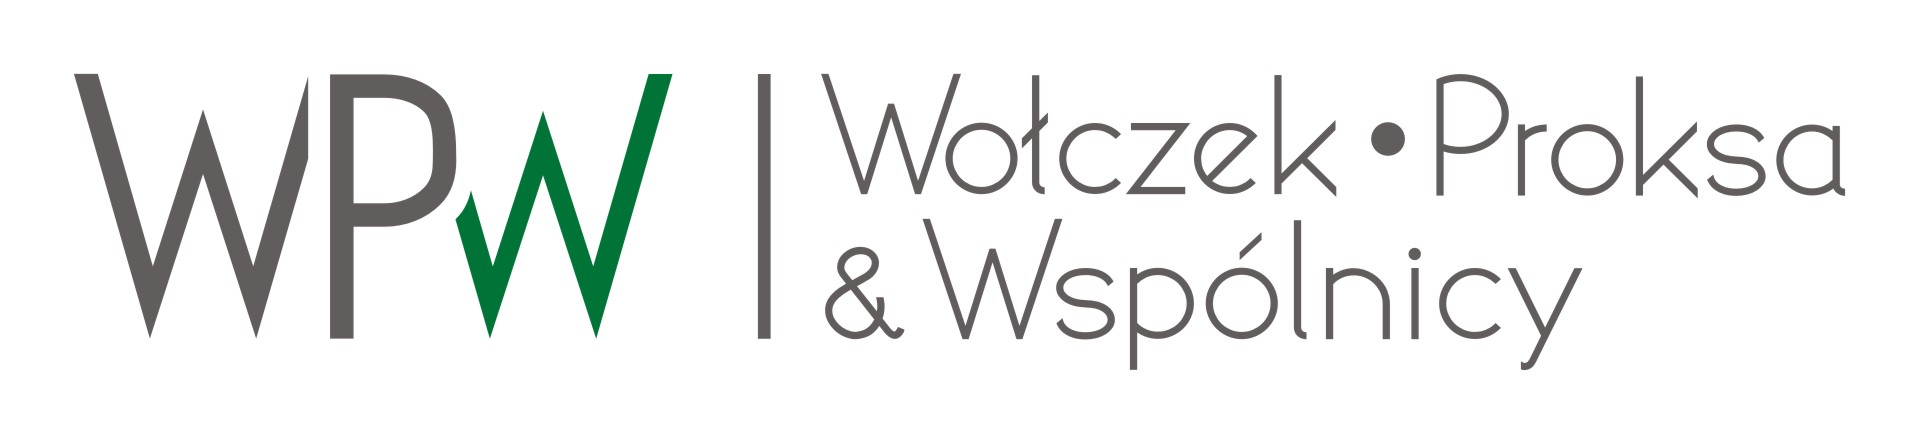 WPW Wołczek, Proksa i Wspólnicy